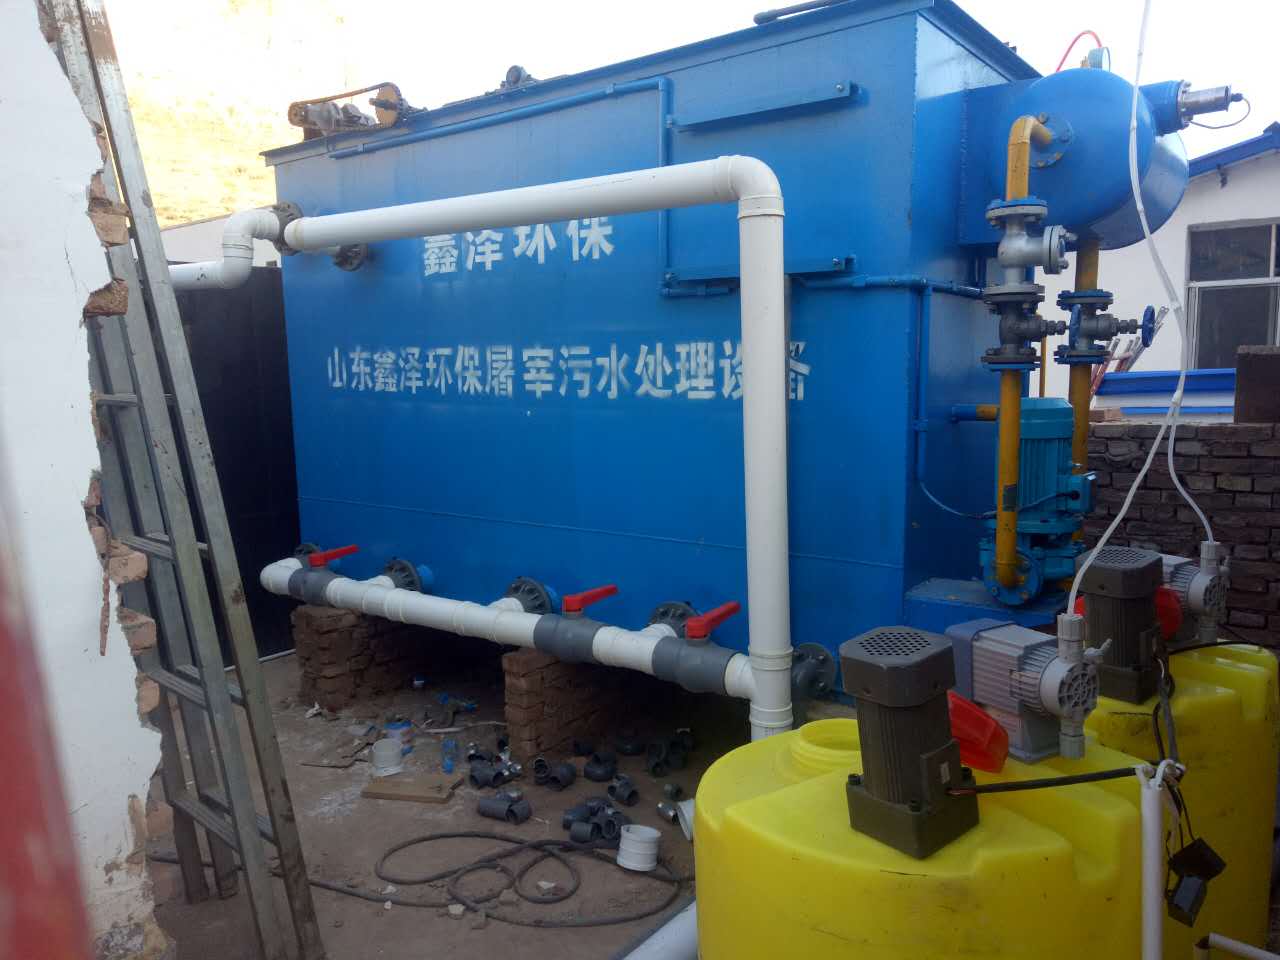 安徽合肥美容院污水处理设备生产厂家价格 价格低，包安装